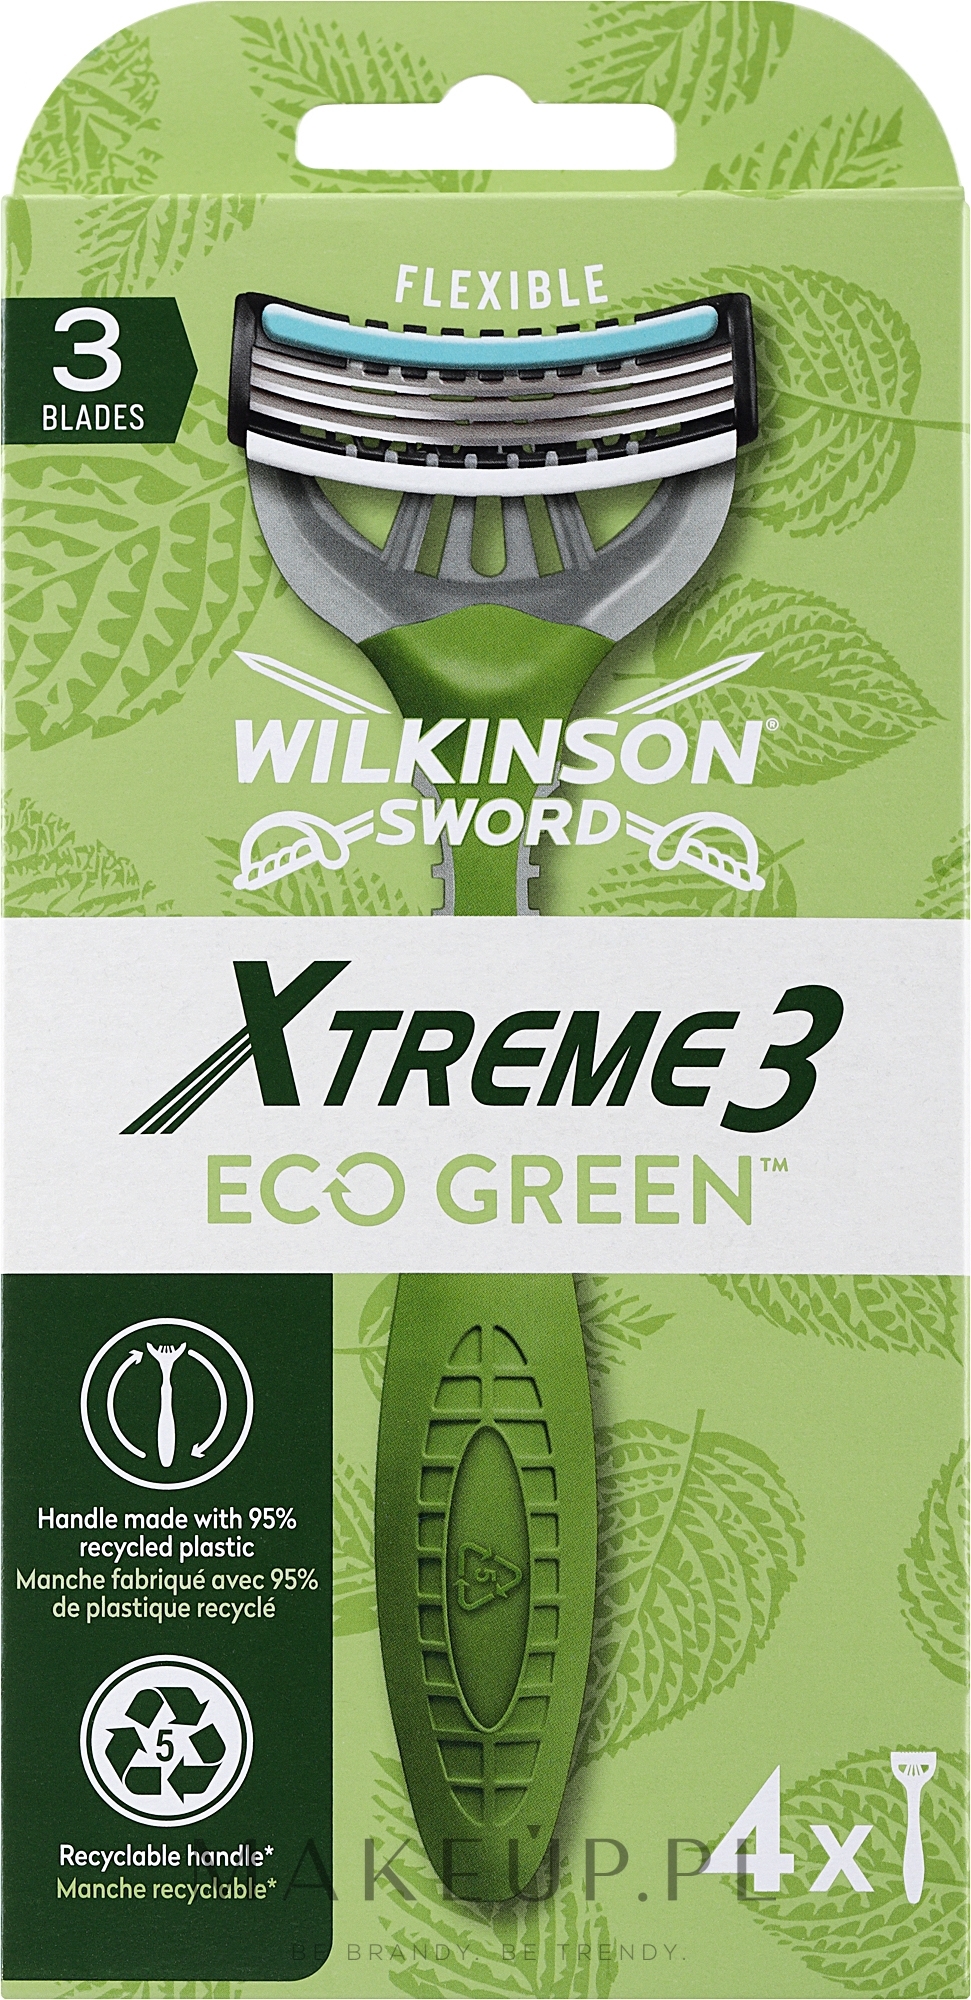 Jednorazowe maszynki do golenia, 4 szt. - Wilkinson Sword Xtreme3 Eco Green — Zdjęcie 4 szt.